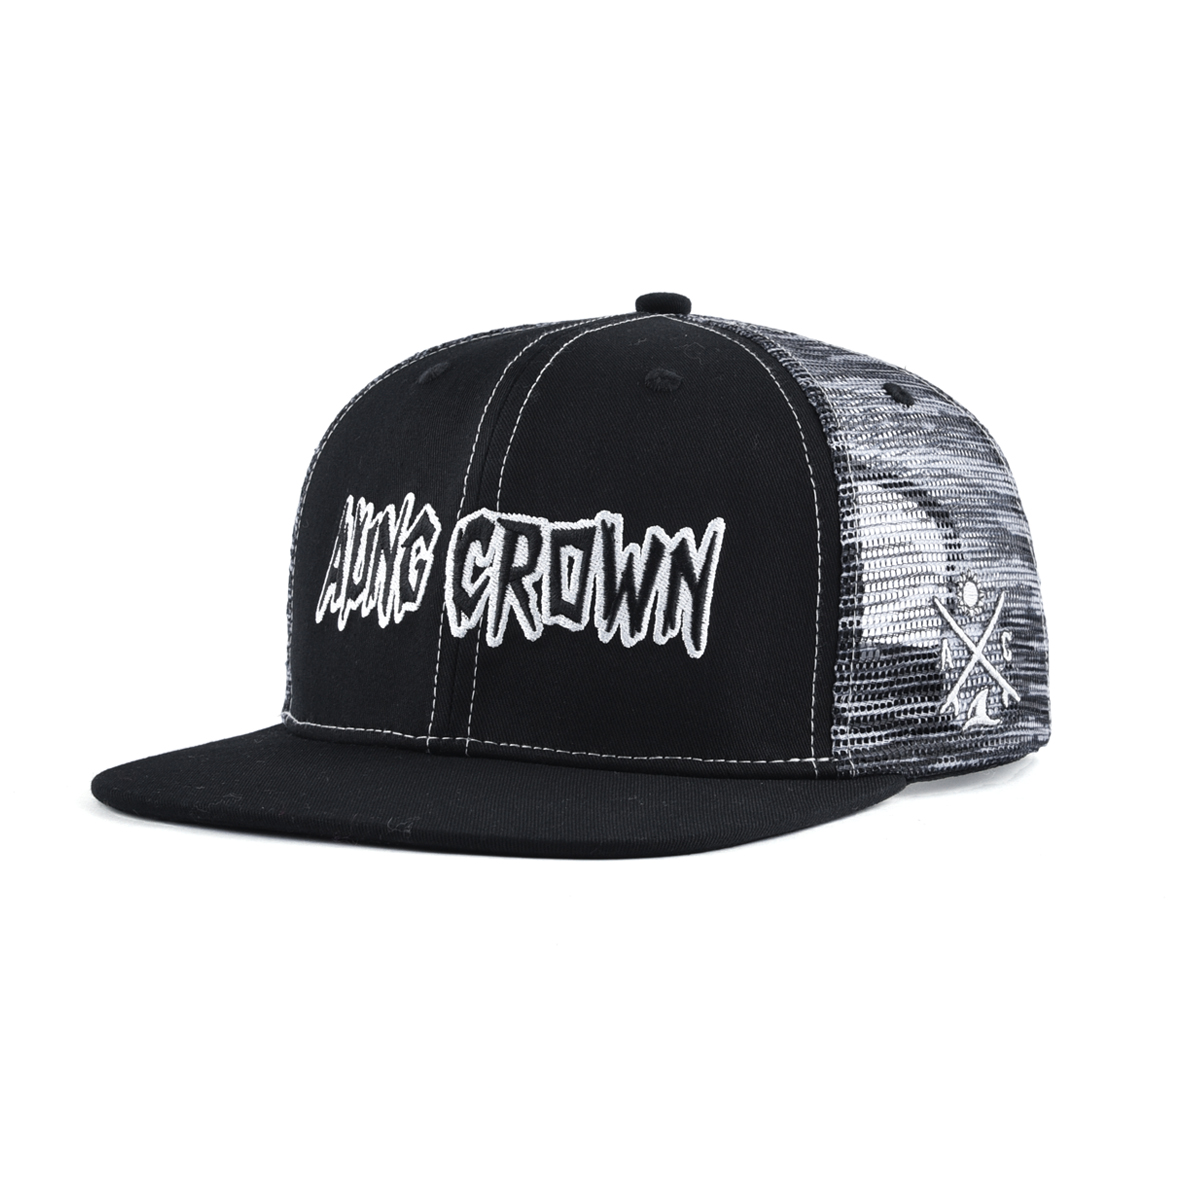 AungCrown street denim style hiphop mesh snapback cap